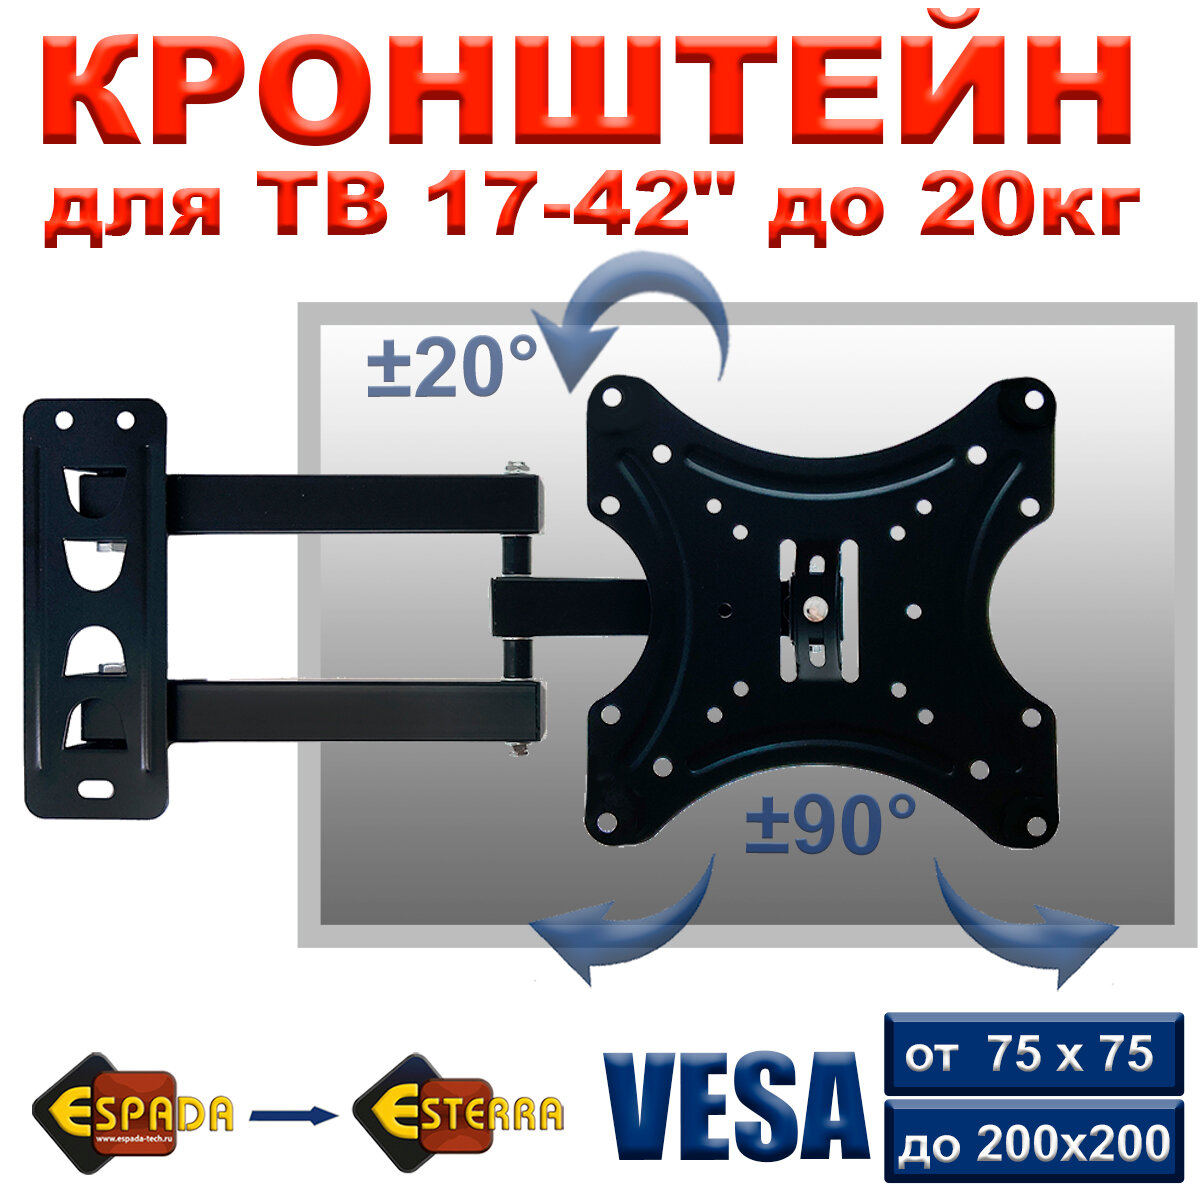 Настенный кронштейн Espada модель Ekr1742wa для телевизоров с диагональю от 17" до 42" поворот на 90° влево и вправо угол наклона до 20°